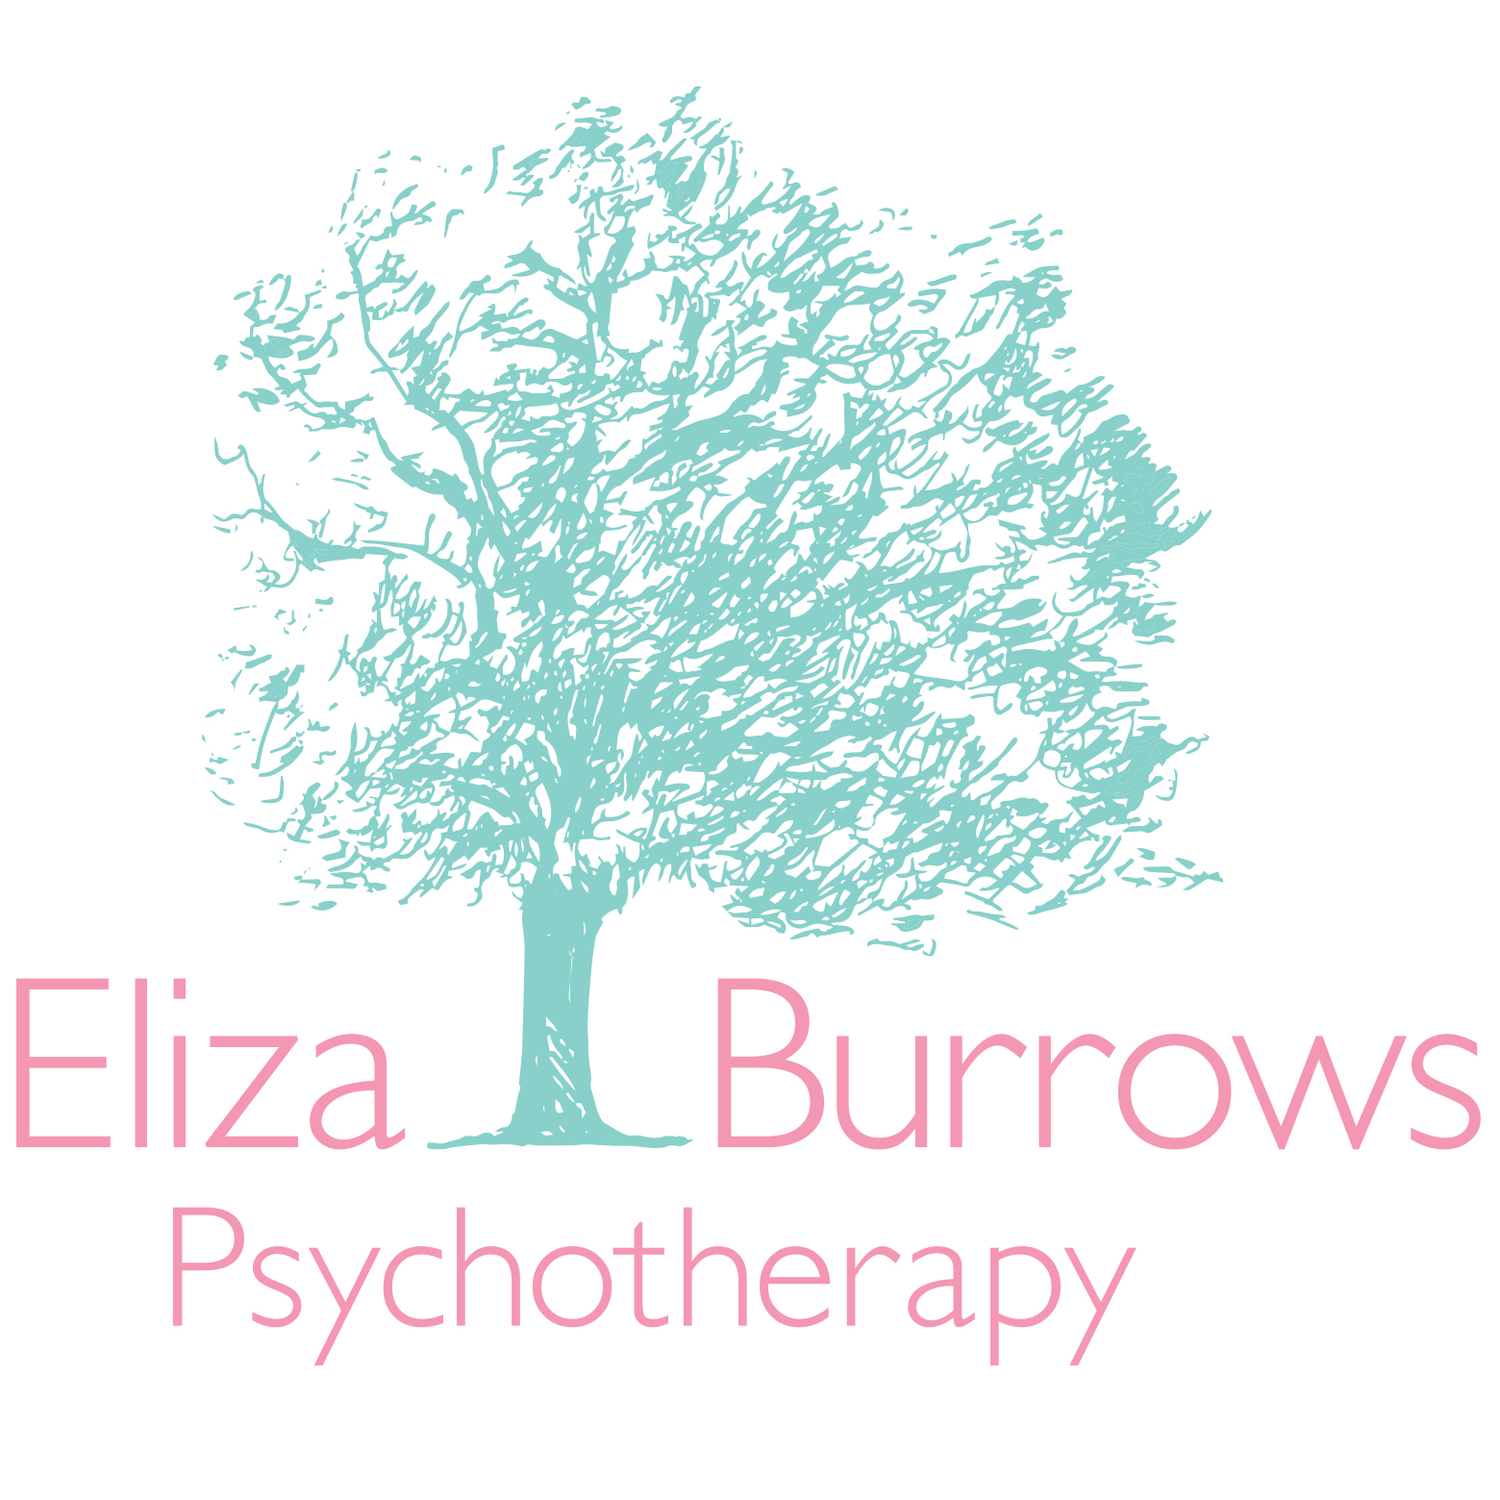 Eliza Burrows psychotherapy.